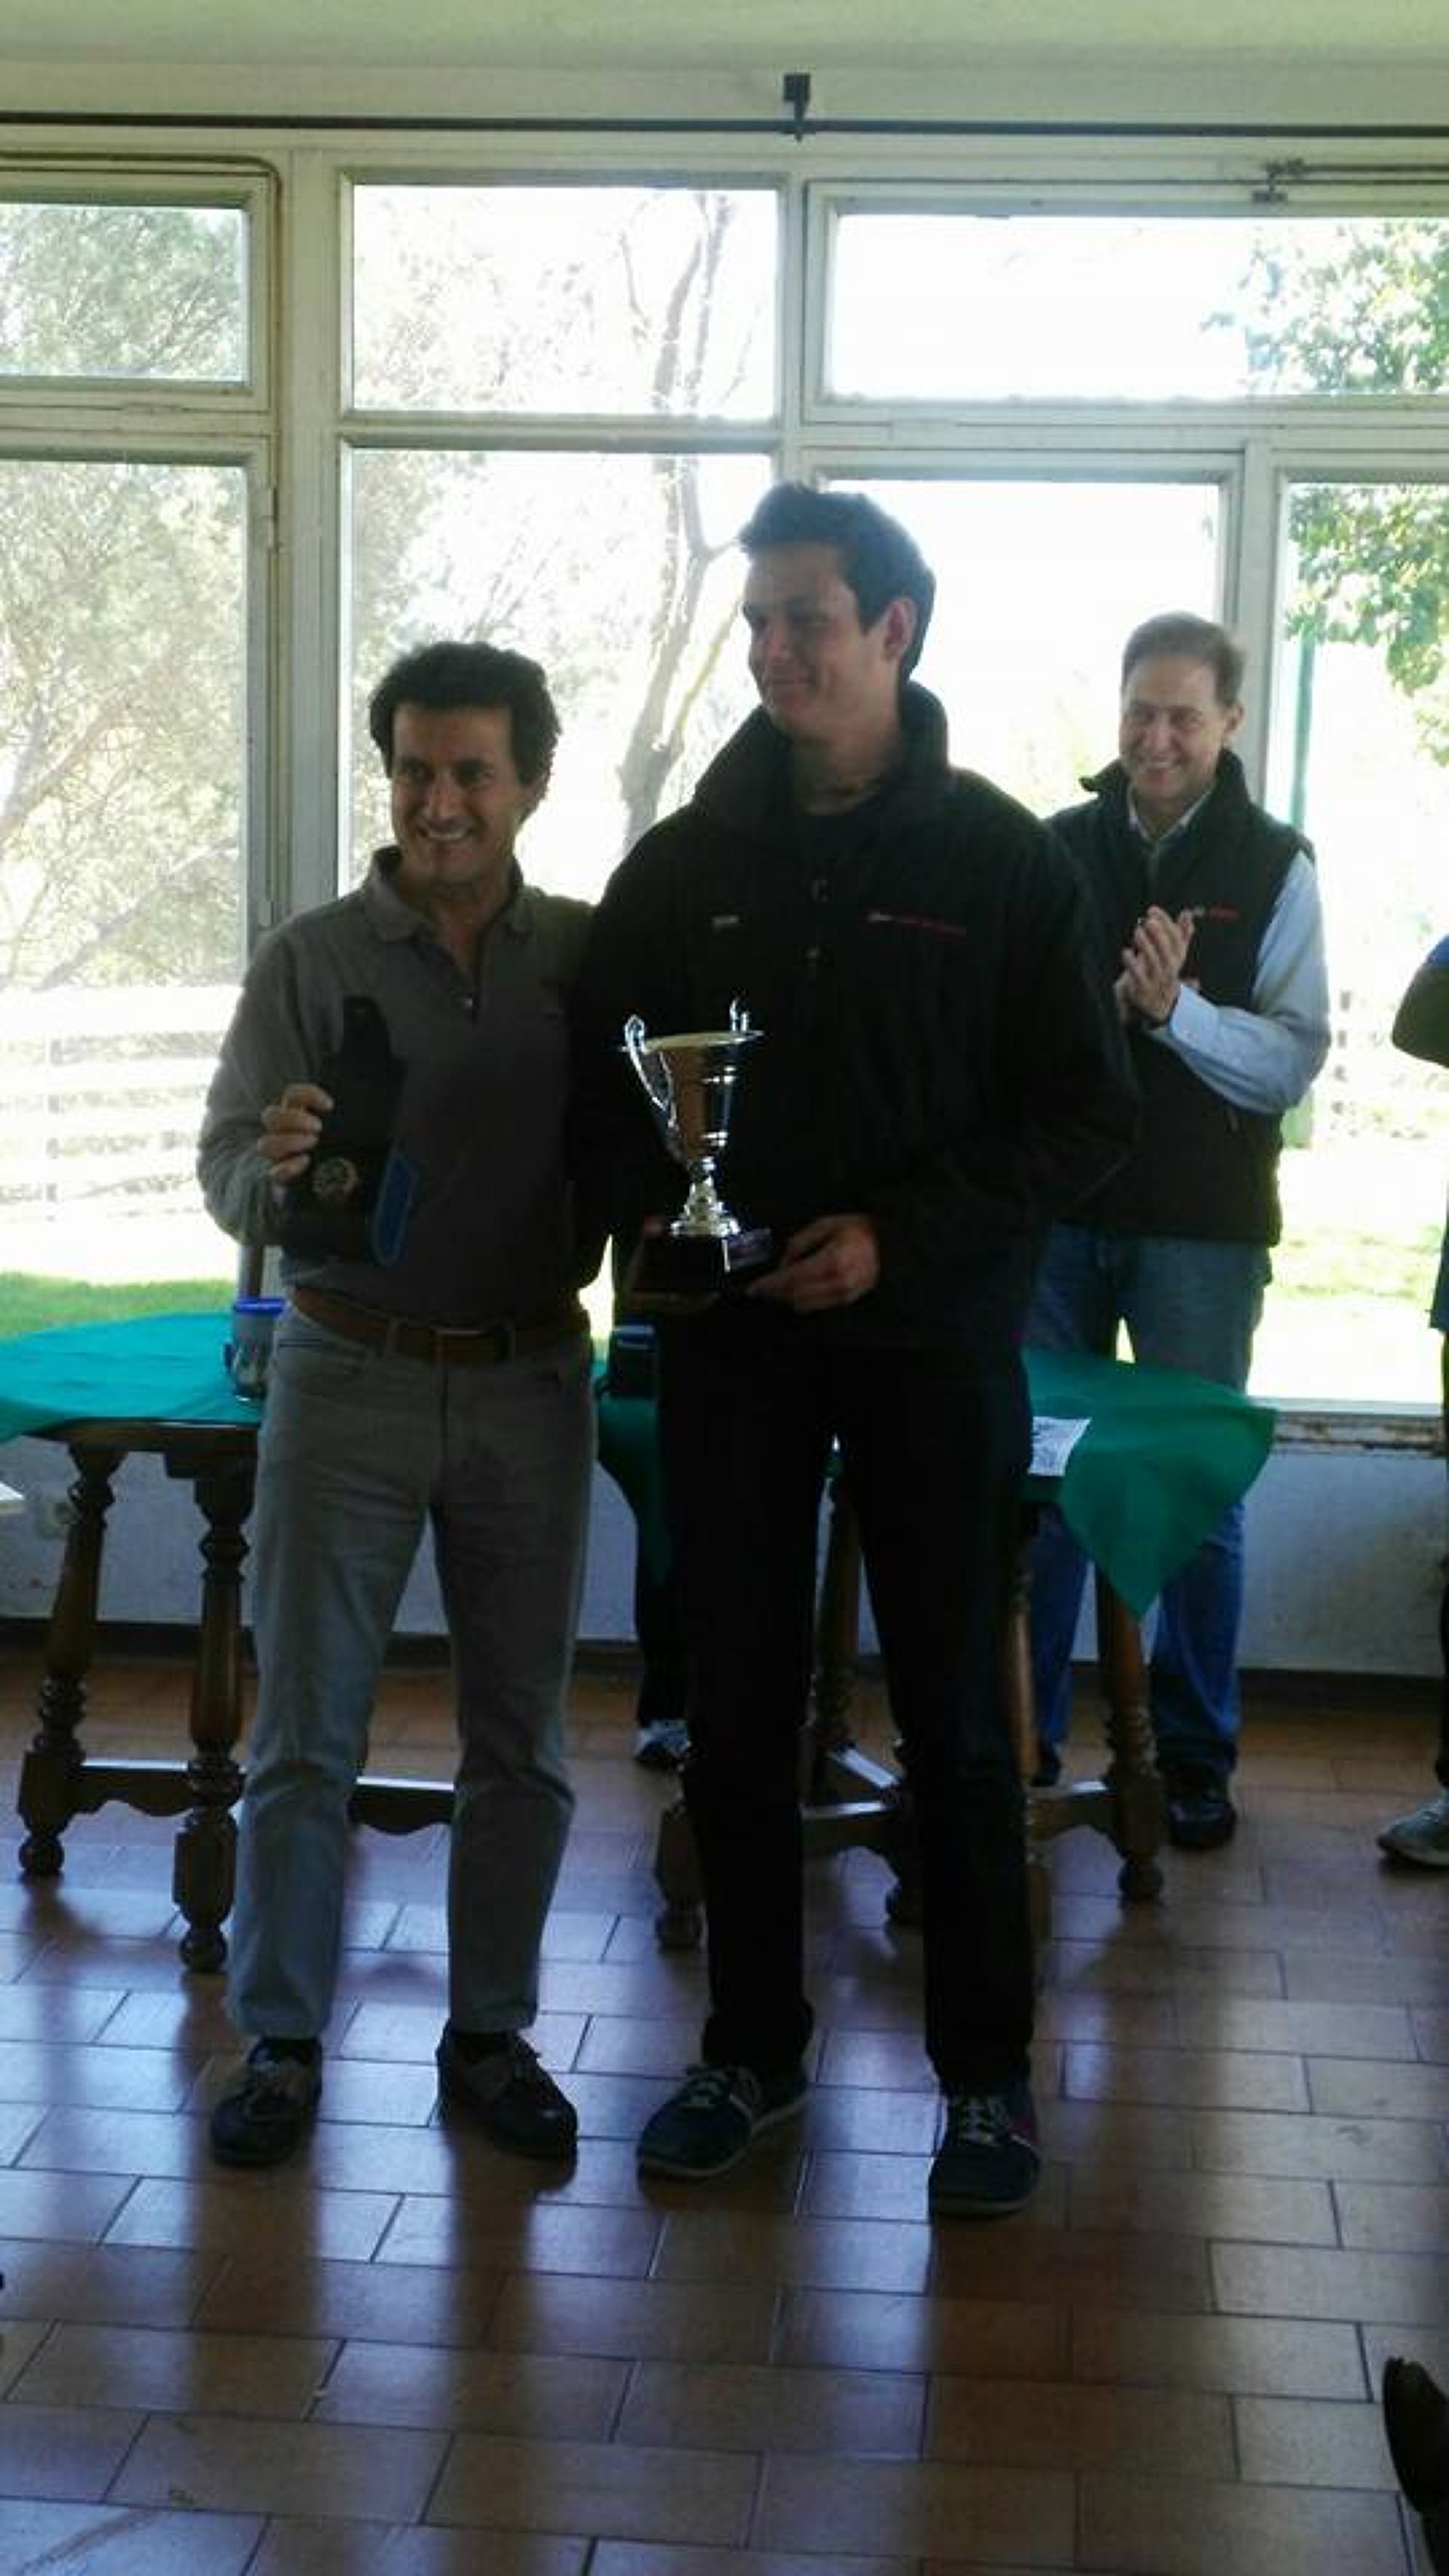 Carlos Ordóñez subcampió d'Espanya i Campió Espanya juvenil a classe Finn